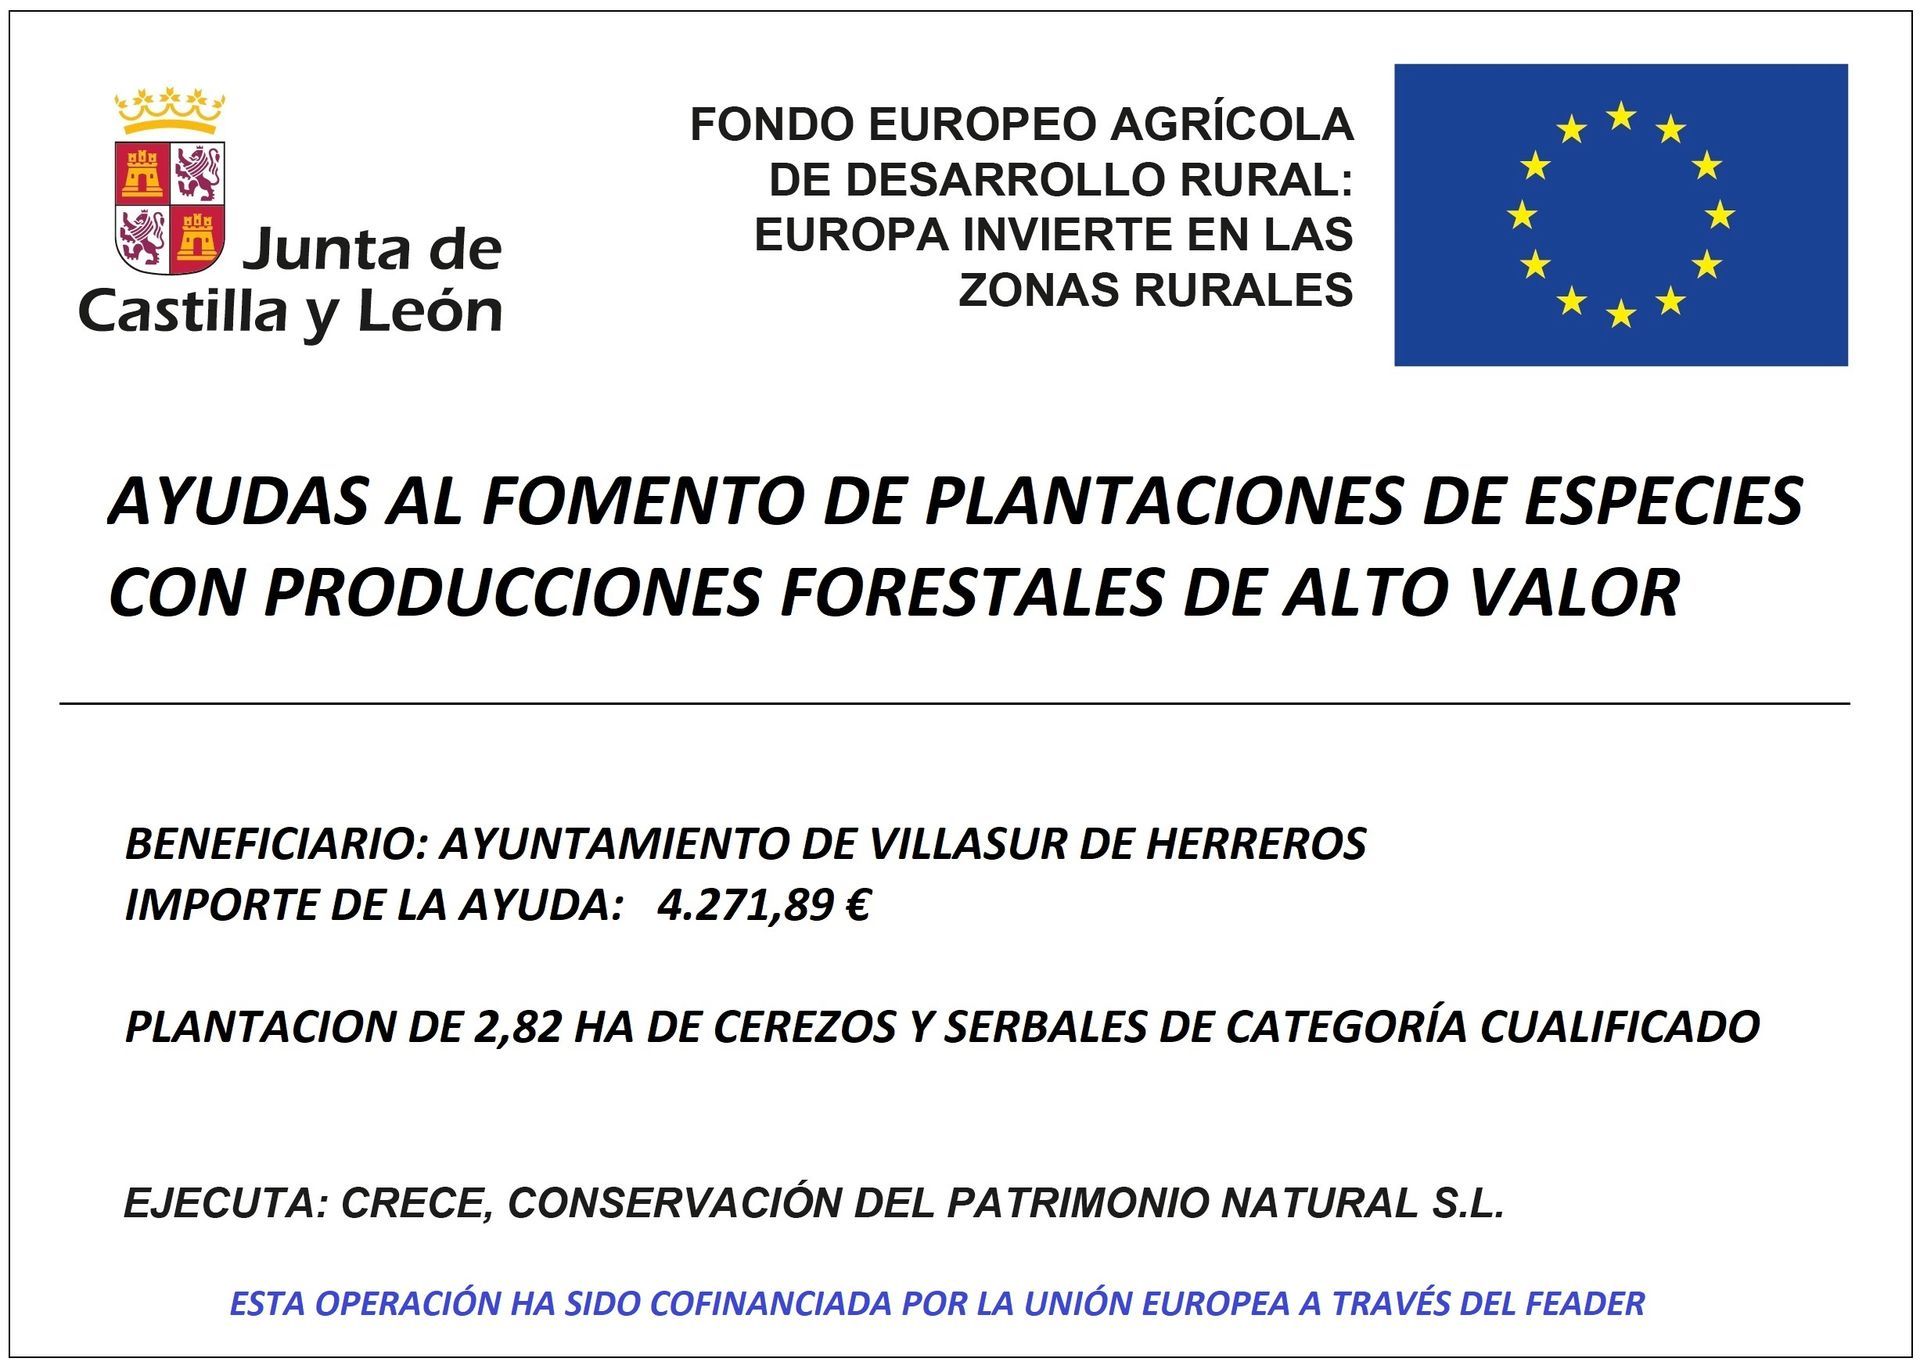 Ayudas al fomento de plantaciones de especies con producciones forestales de alto valor cofinanciadas por el Fondo Europeo Agrícola de Desarrollo Rural (FEADER), para el año 2018, en el marco del Programa de Desarrollo Rural de Castilla y León 2014-2020